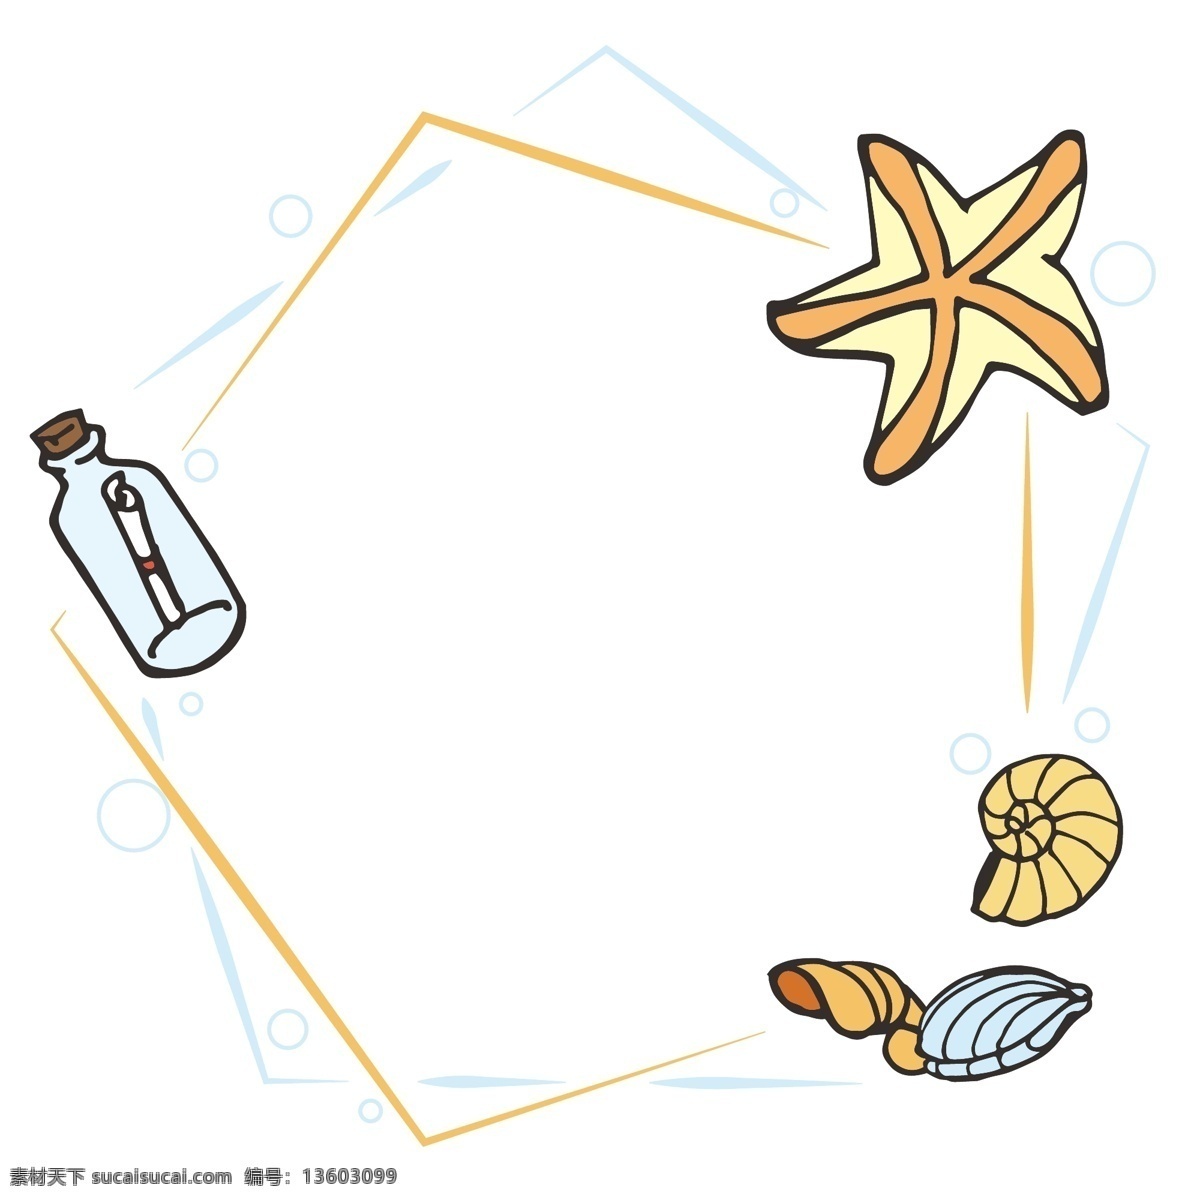 夏日 海洋 元素 矢量 边框 儿童 简笔画 卡通 可爱 漂流瓶 贝壳 海螺 海星 海马 简约 气泡 泡泡